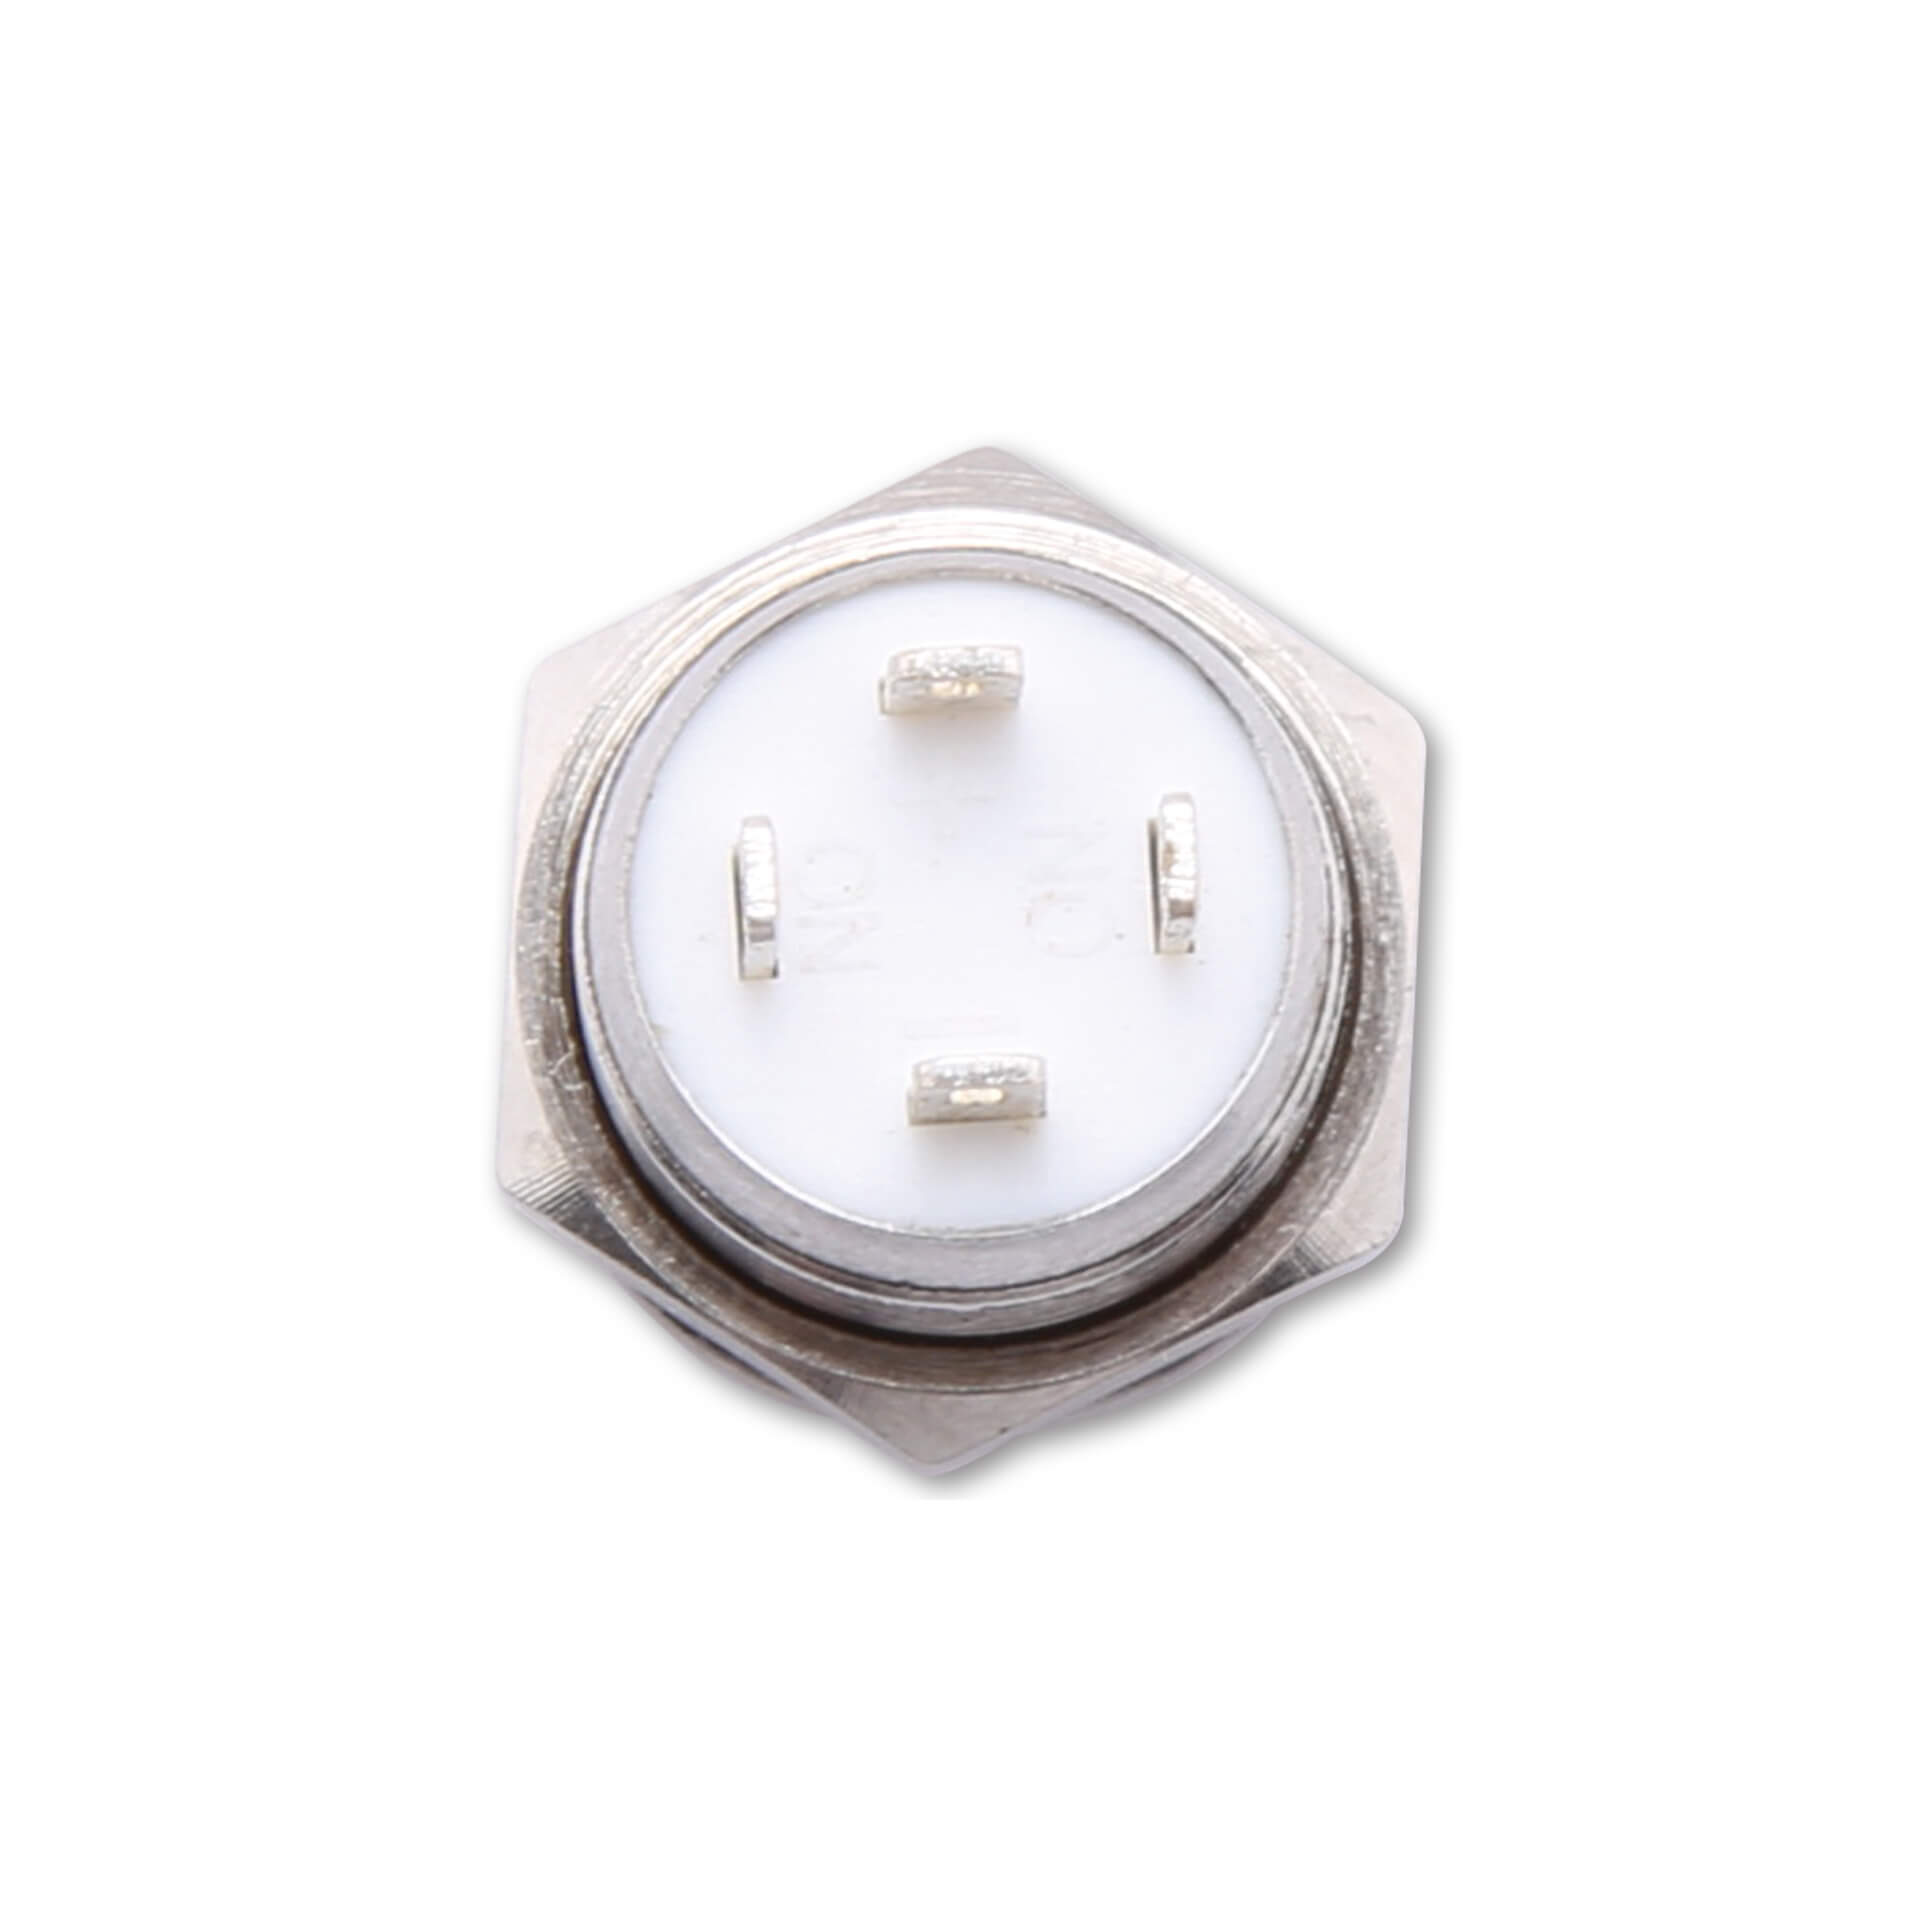 Image of HIGHSIDER Pushbutton in acciaio inox con anello illuminato a LED in diversi colori (M12), pezzo, bianco-argento